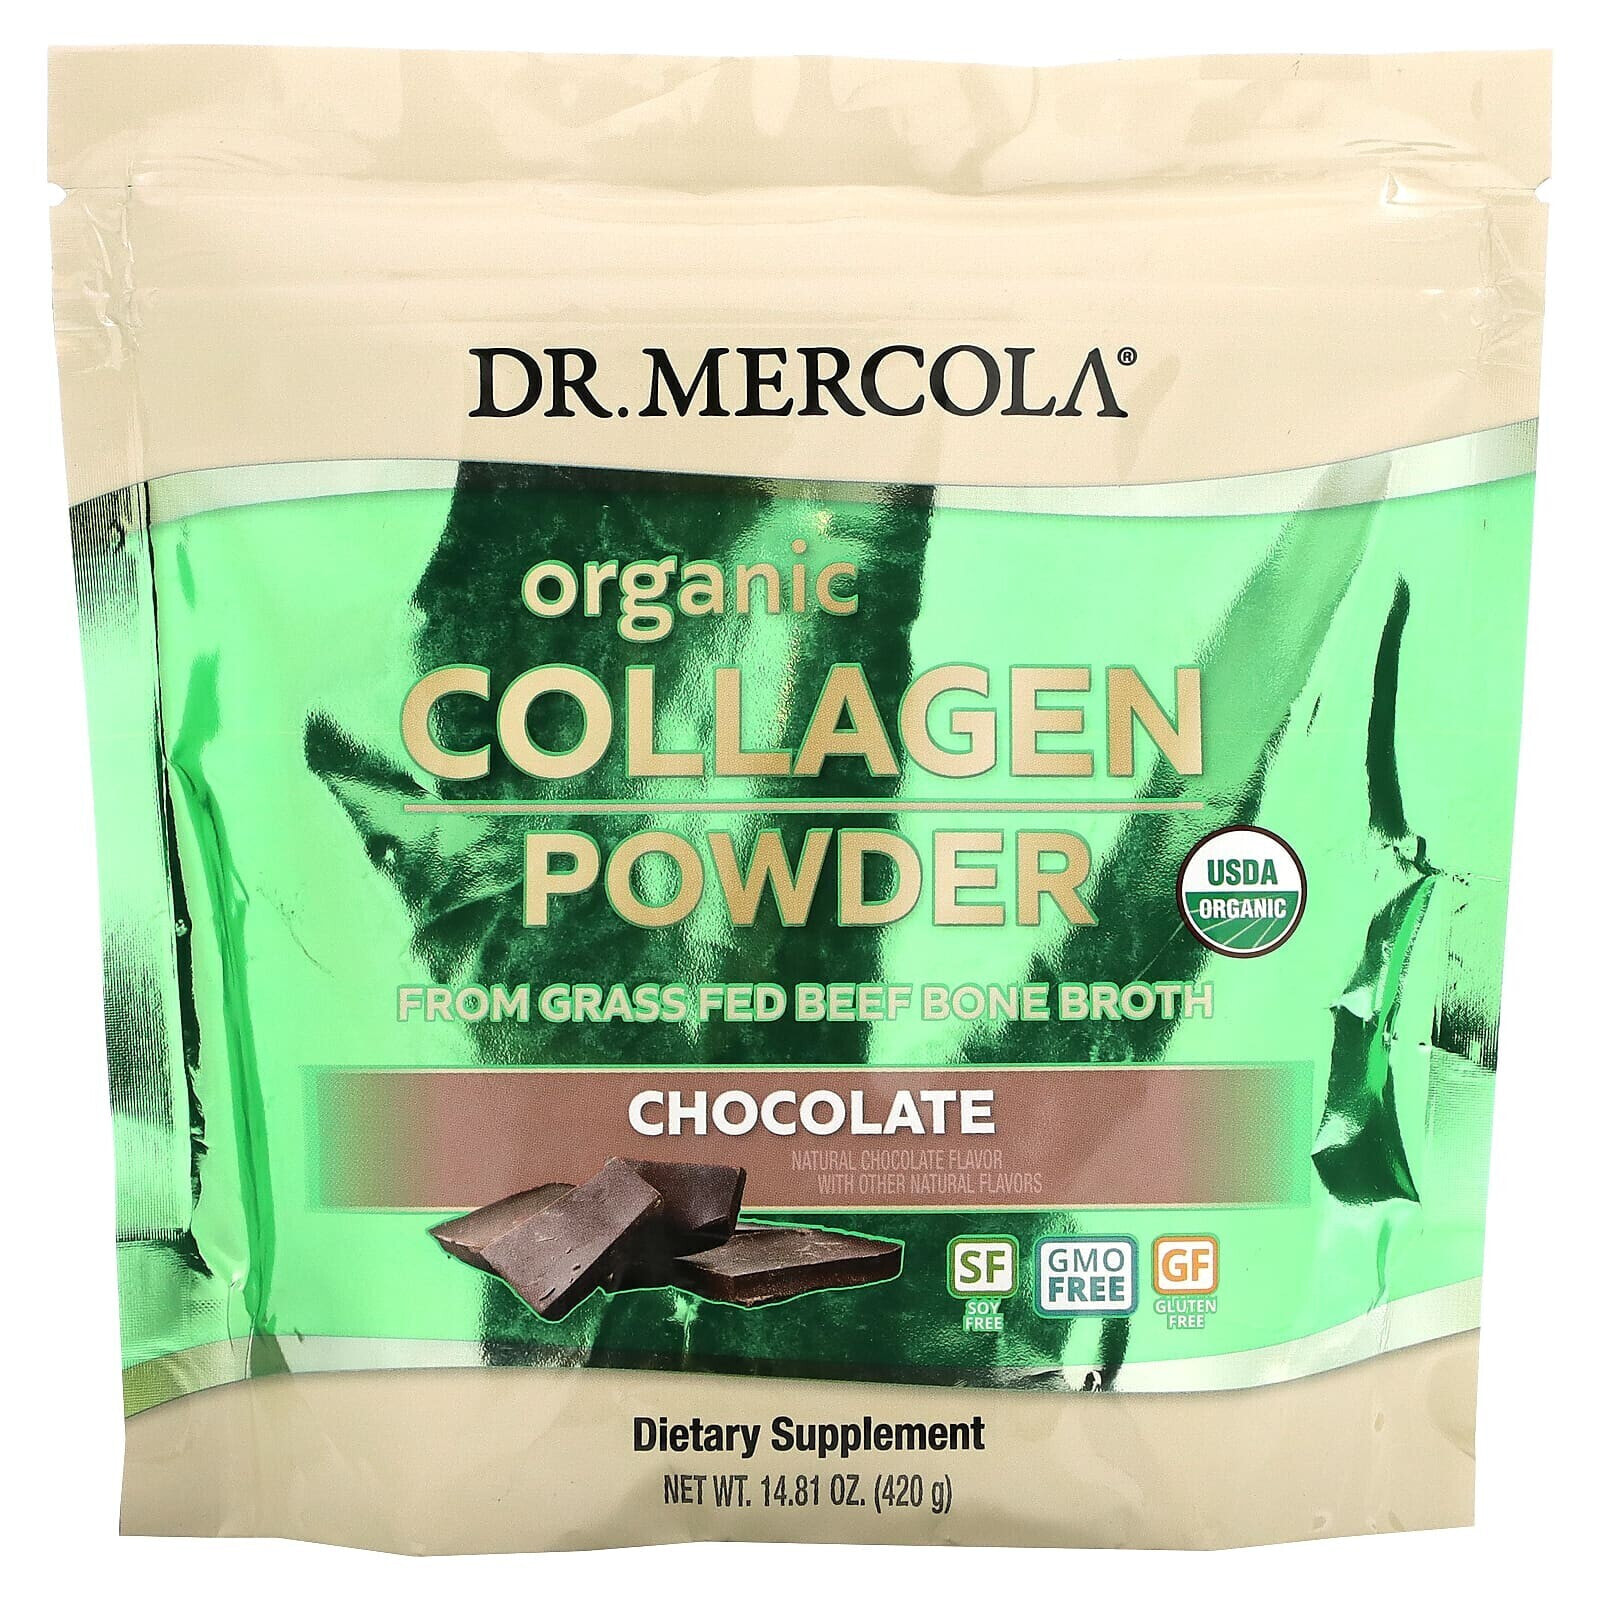 Dr. Mercola, Органический порошоки из коллагена, ваниль, 304,5 г (10,74 унции)